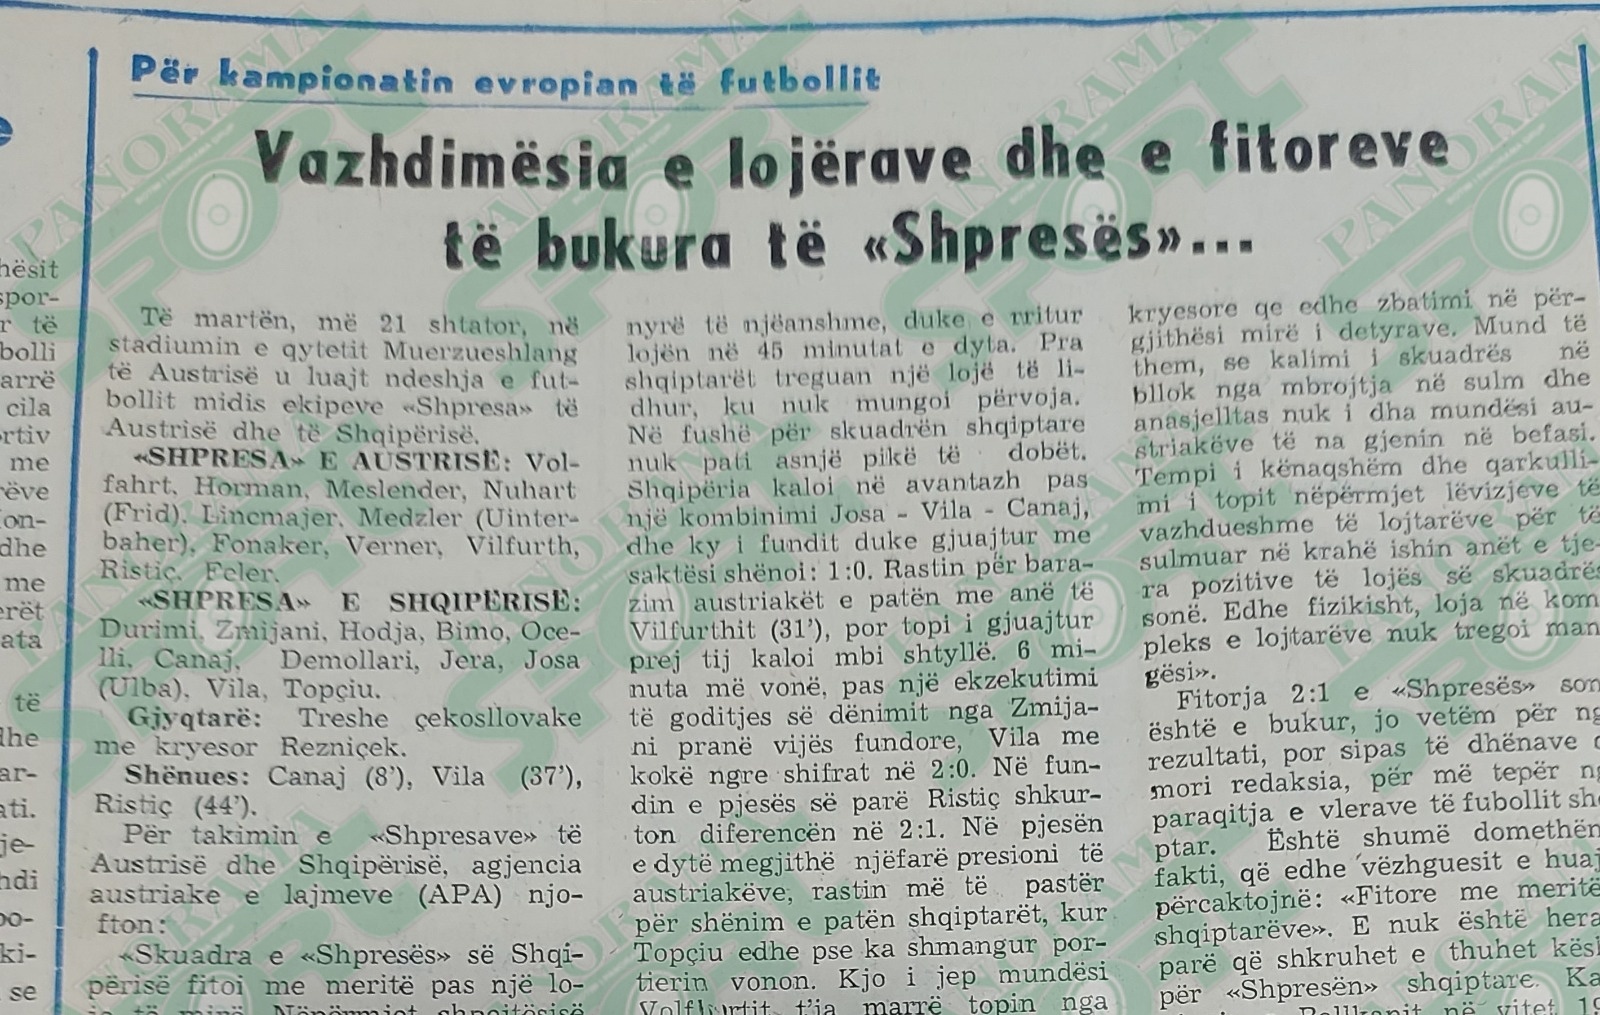 Kreu i shkrimit të faqes së parë të “Sportit Popullor” për ndeshjen e “Shpresave” Austria – Shqipëria 1-2.